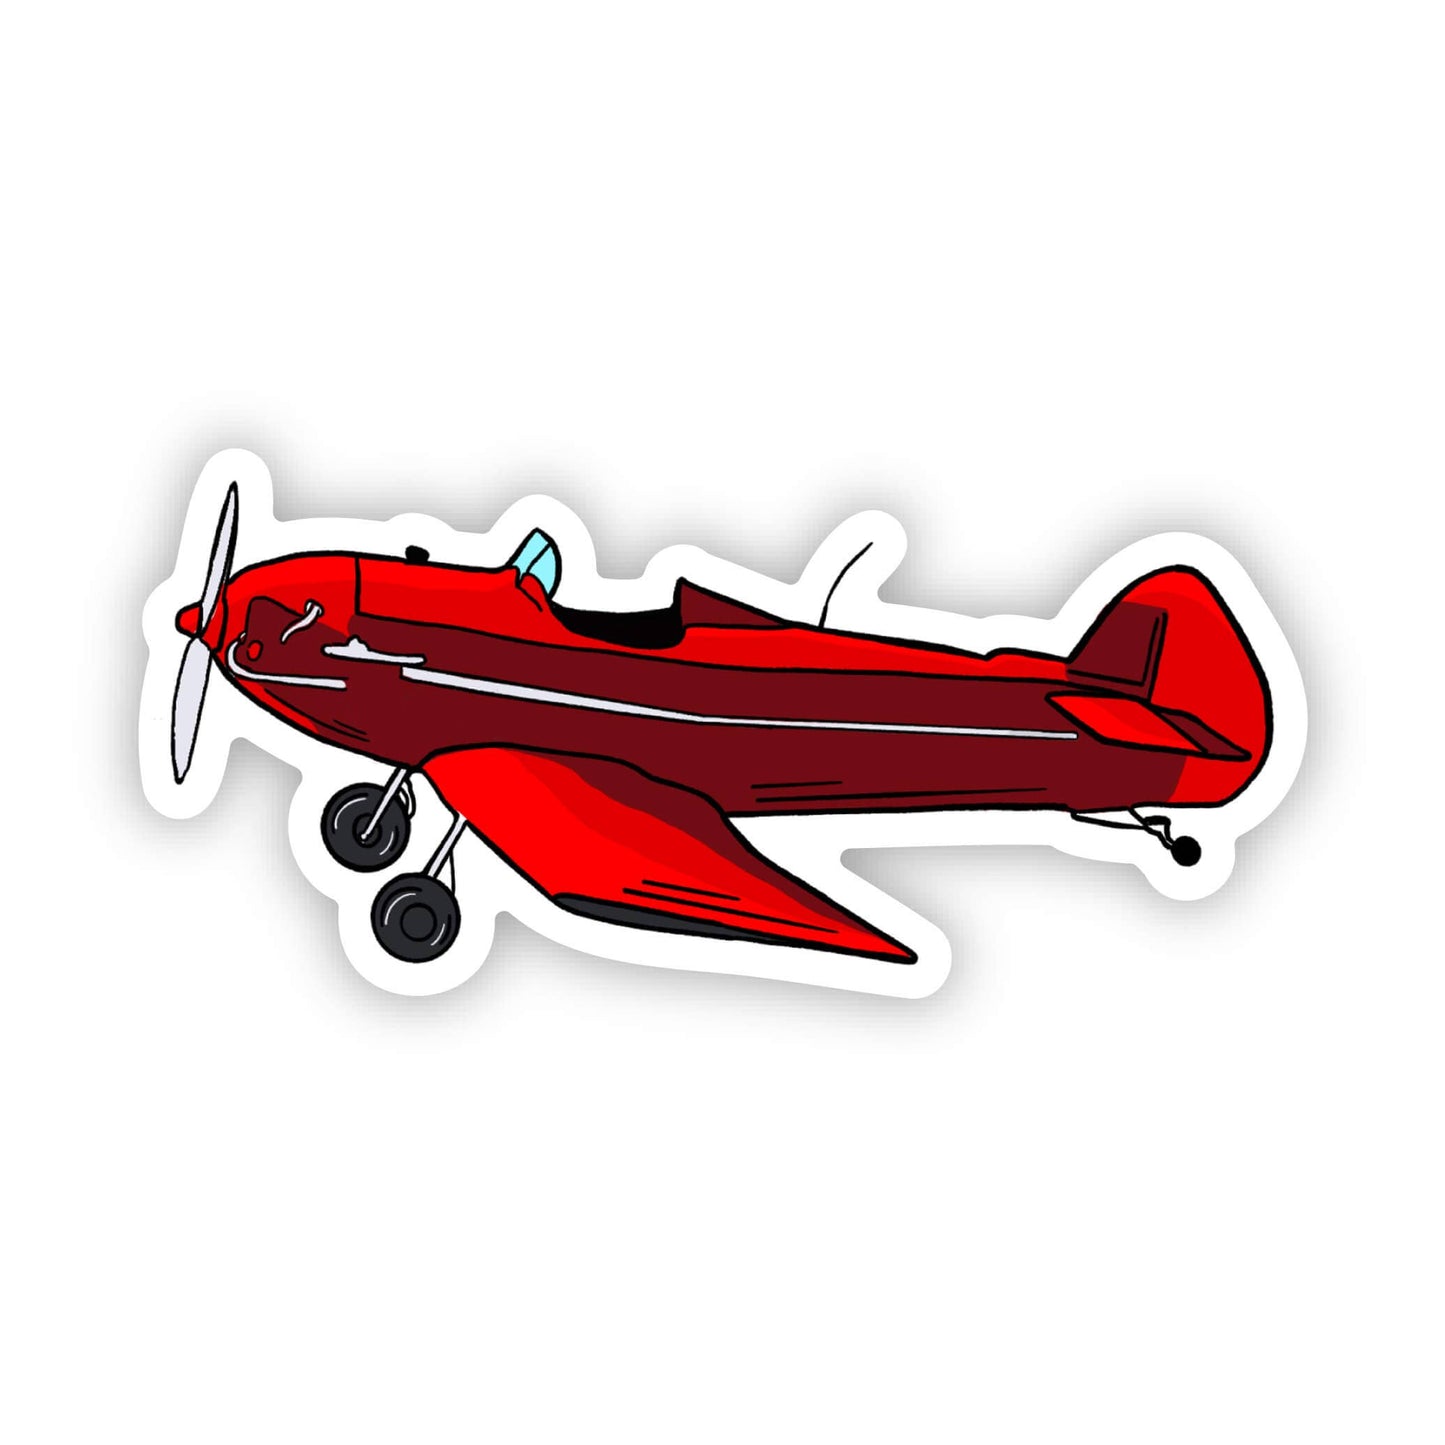 Little Red Airplane Sticker